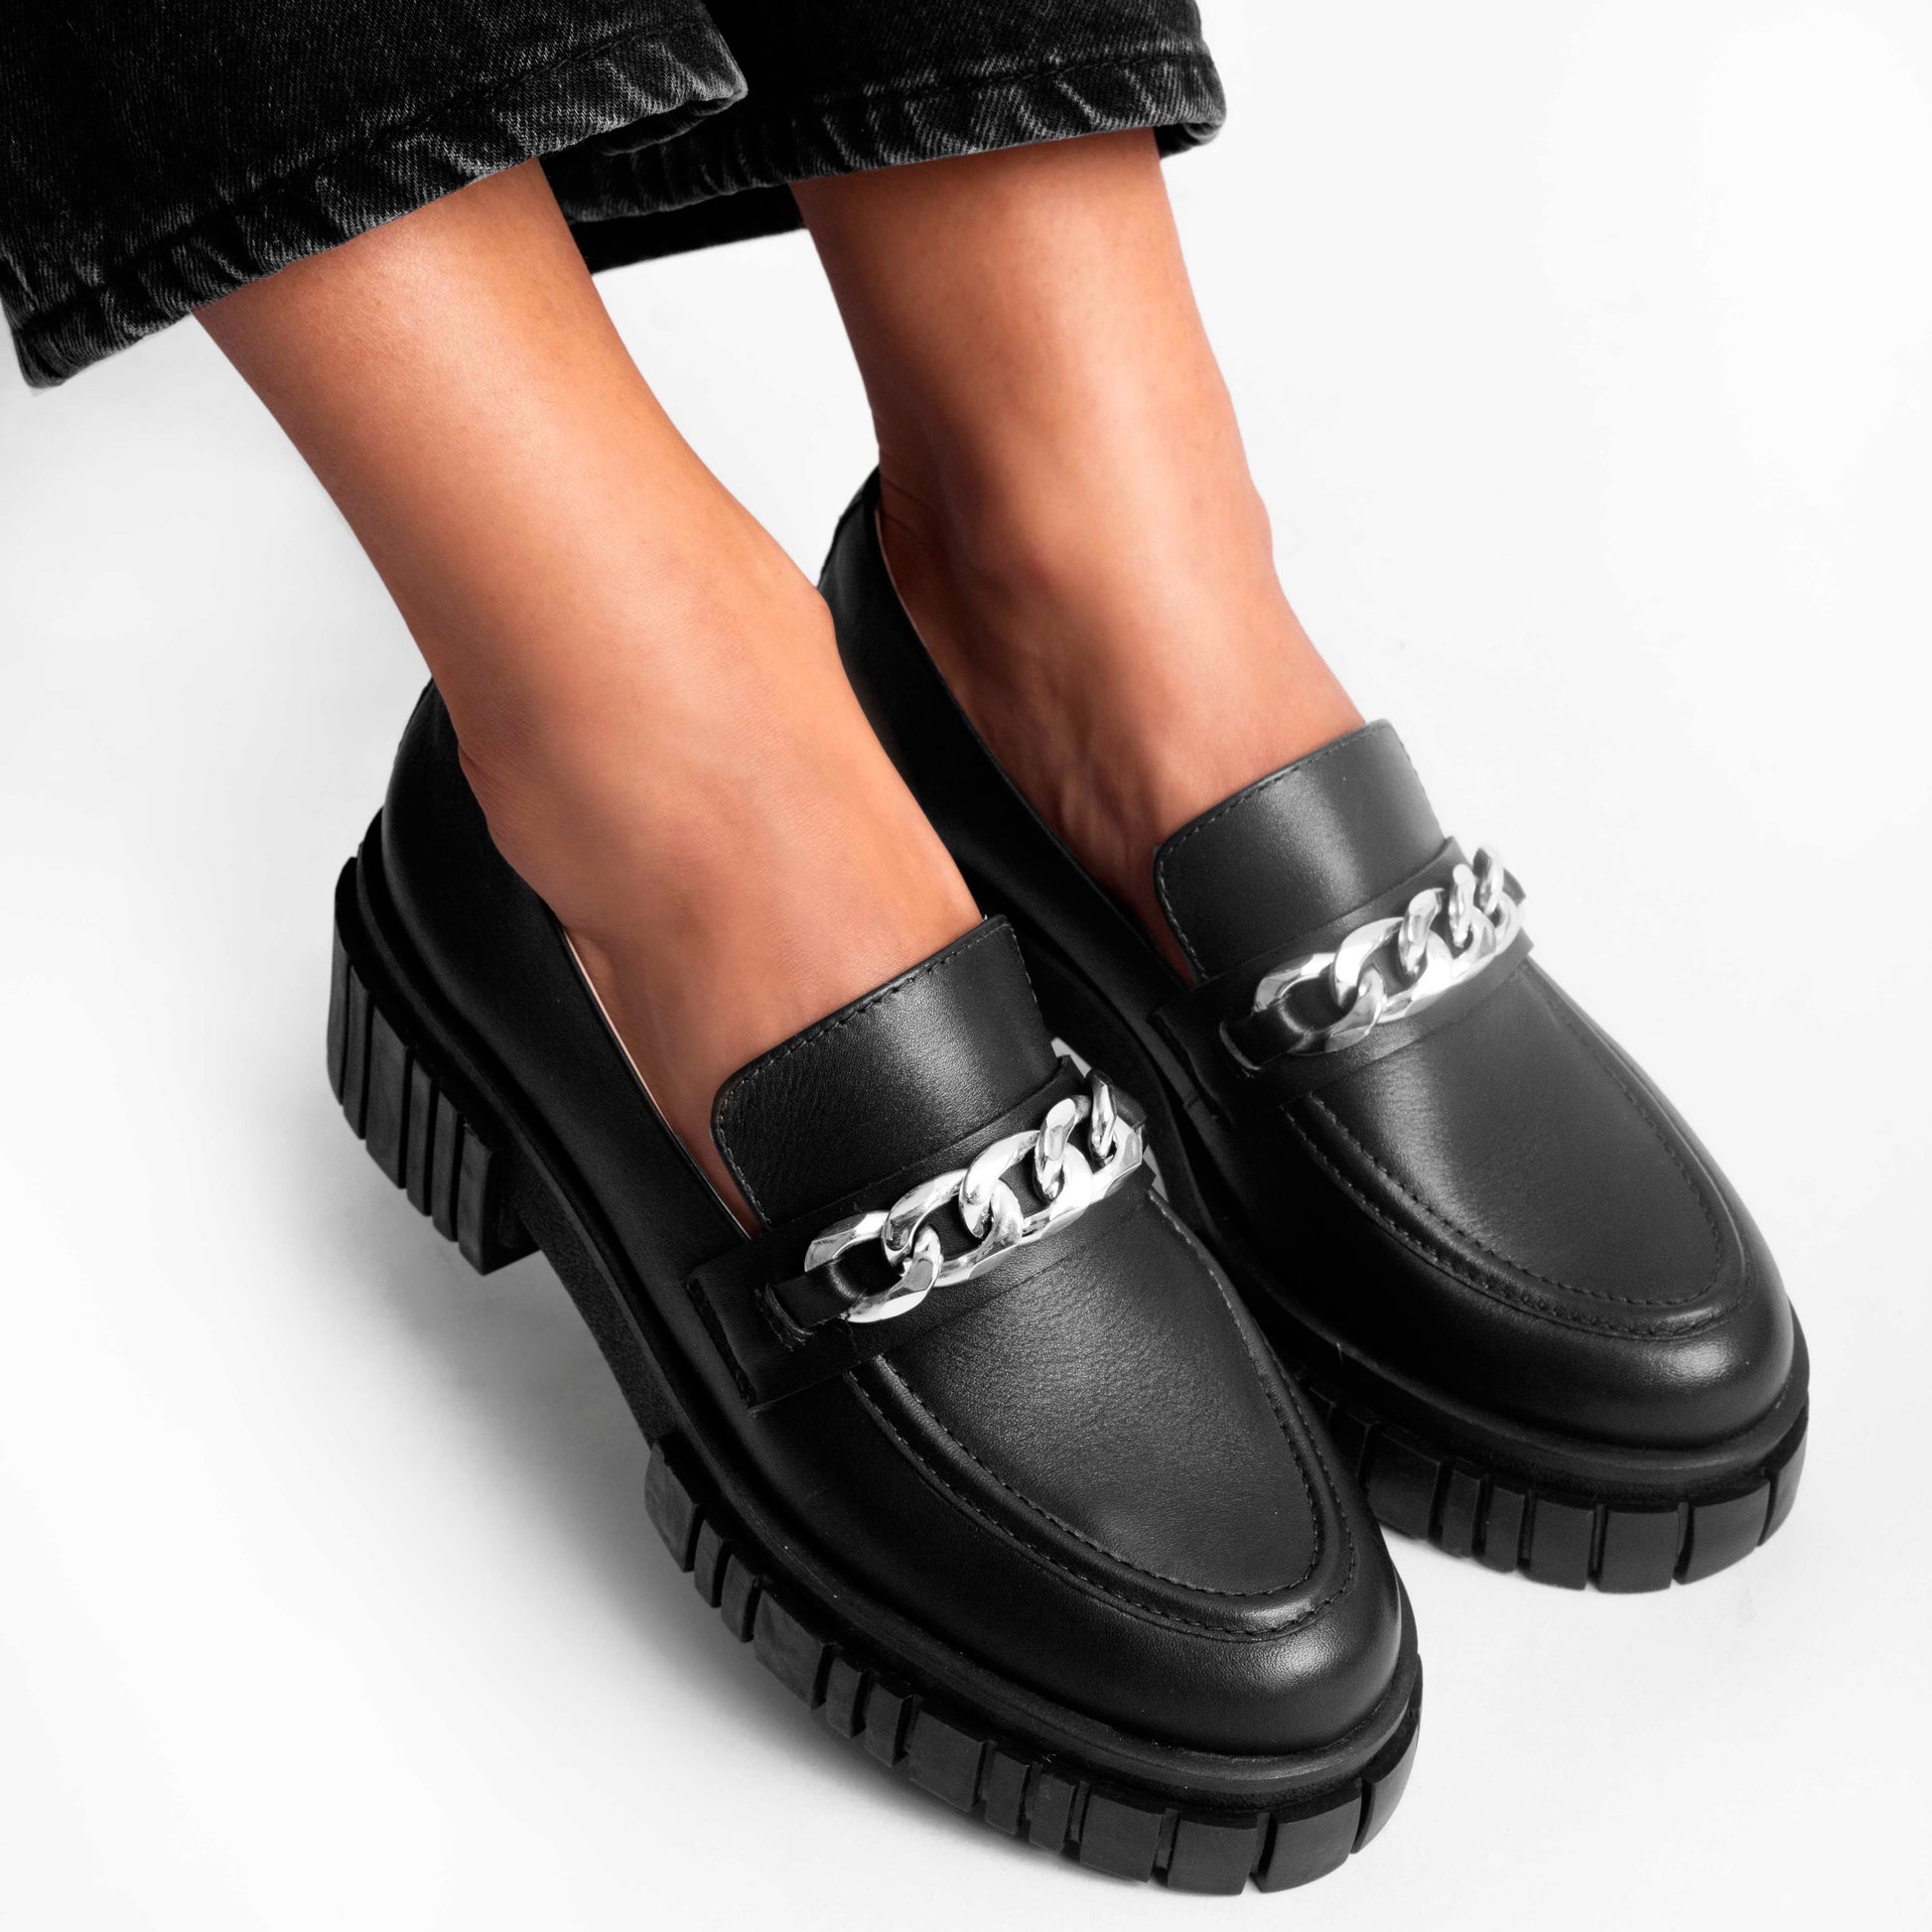 Vinci Shoes Emilia Black Loafers